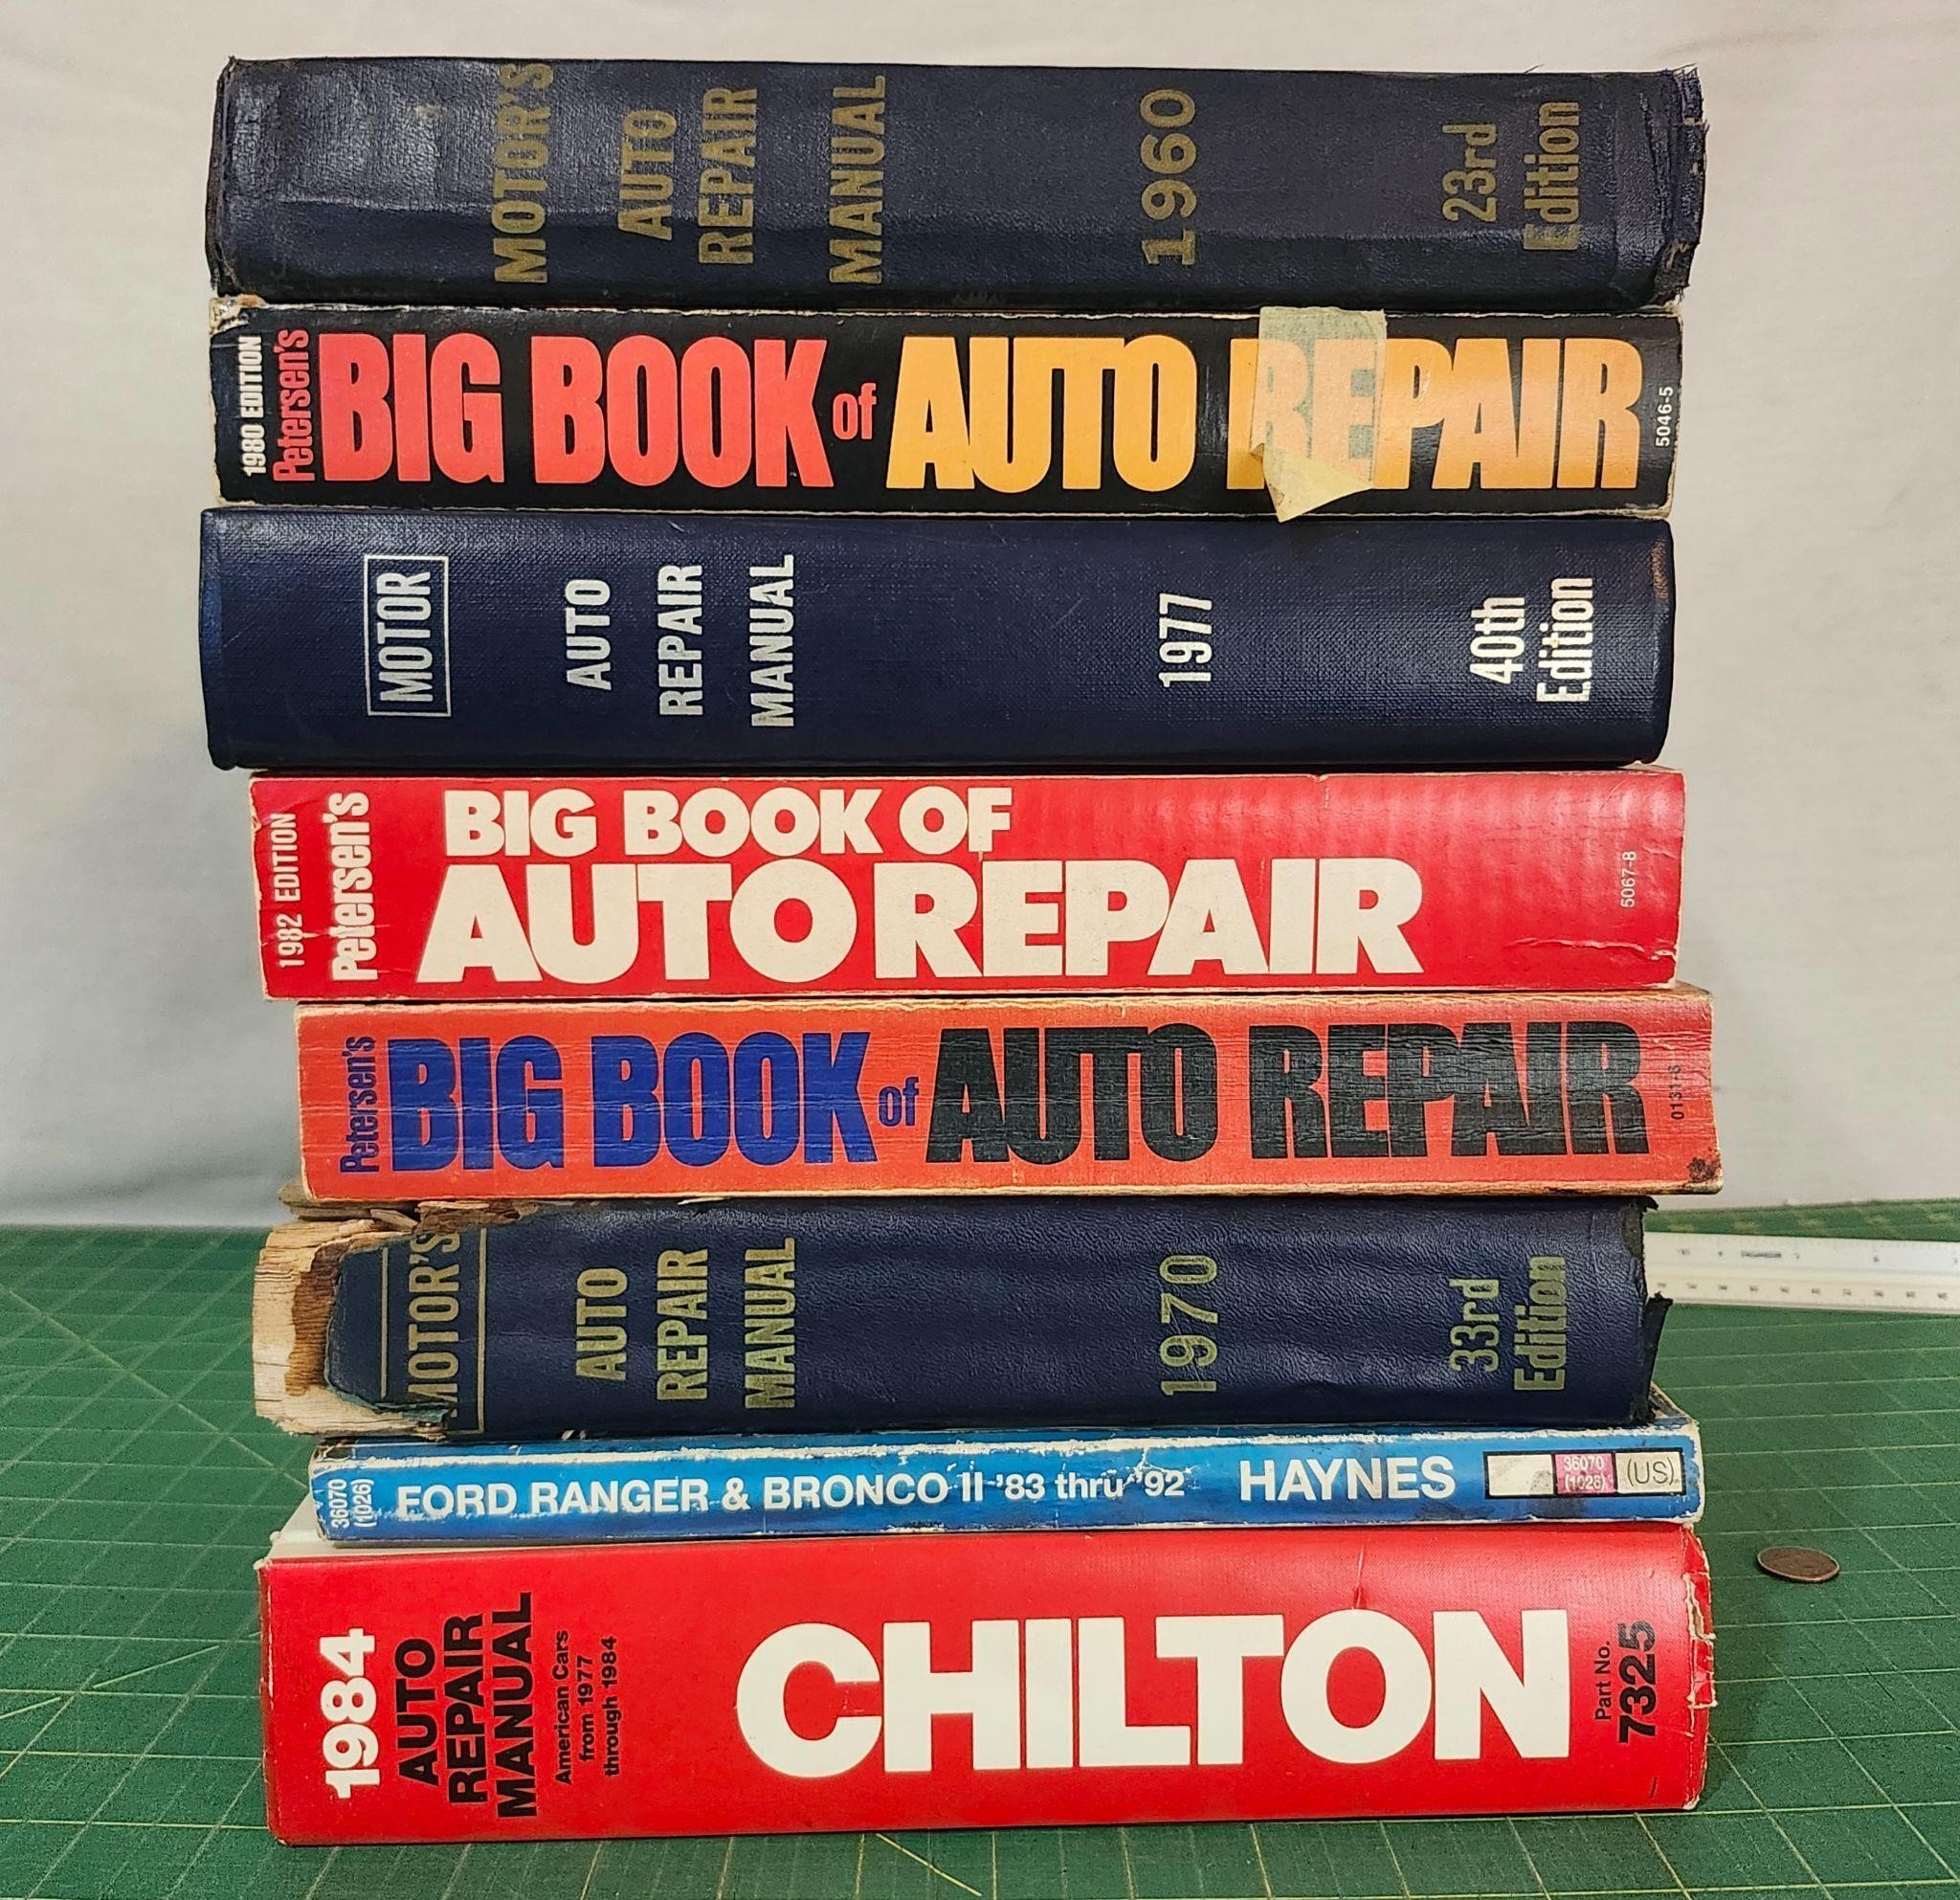 Auto repair manuals